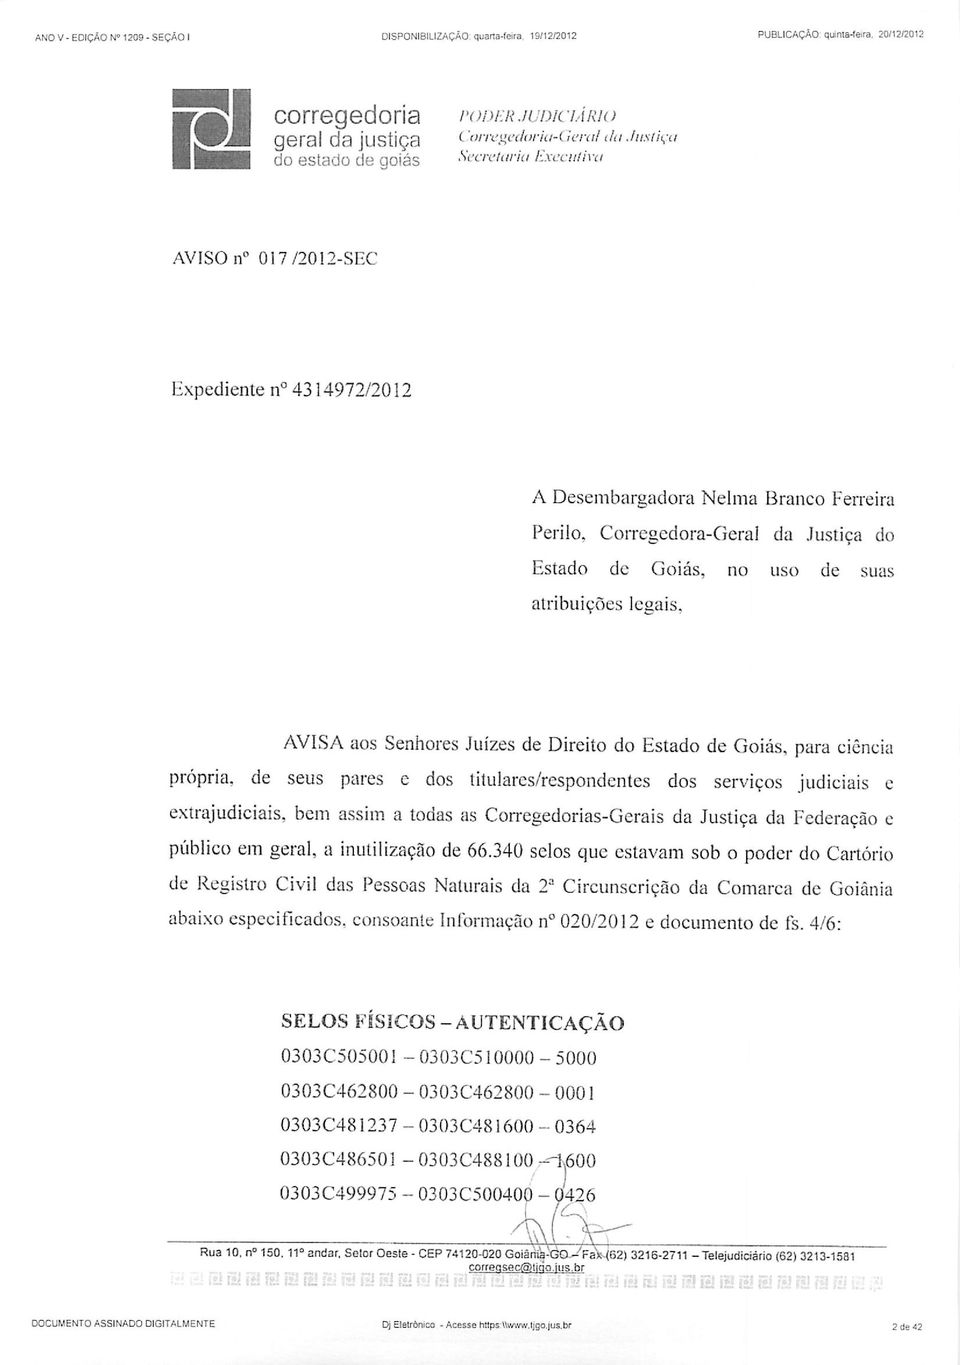 Corregedora-Geral da Justiça do Estado de Goiás, no uso de suas atribuições legais.